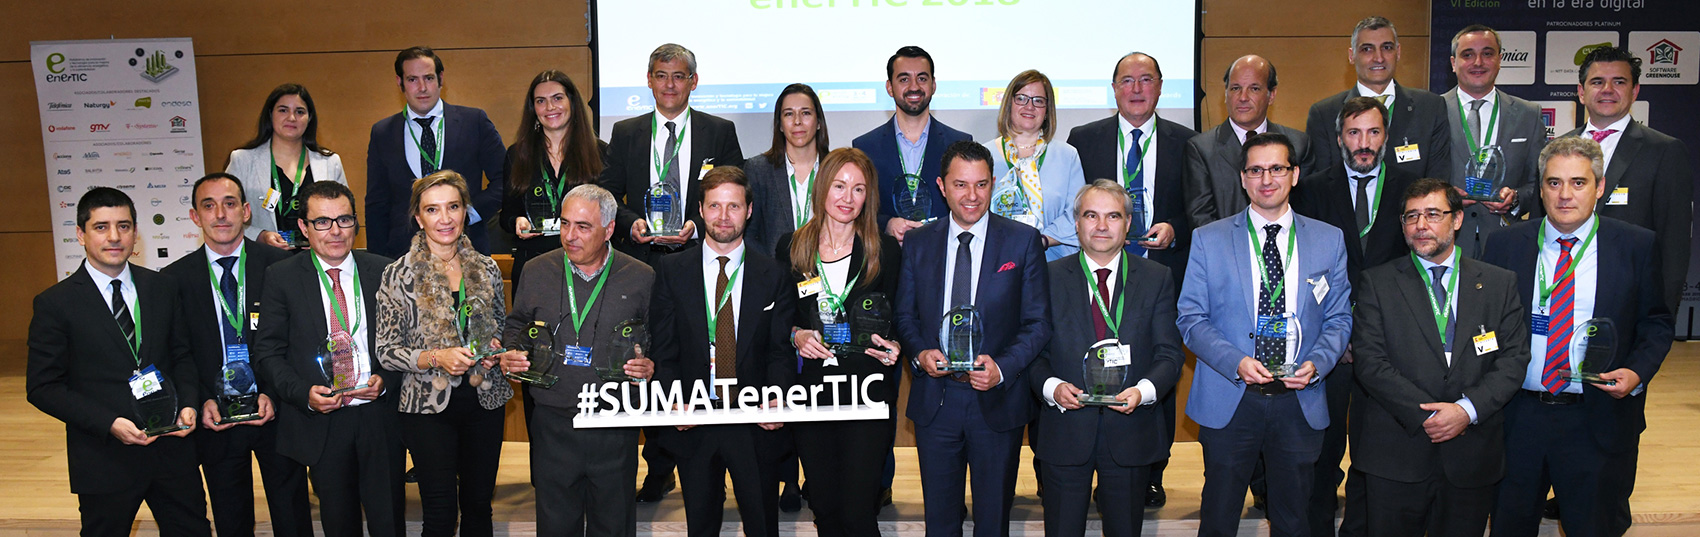 Foto de grupo de los ganadores en las categoras de Proyectos y Directivos de los Premios EnerTIC 2018